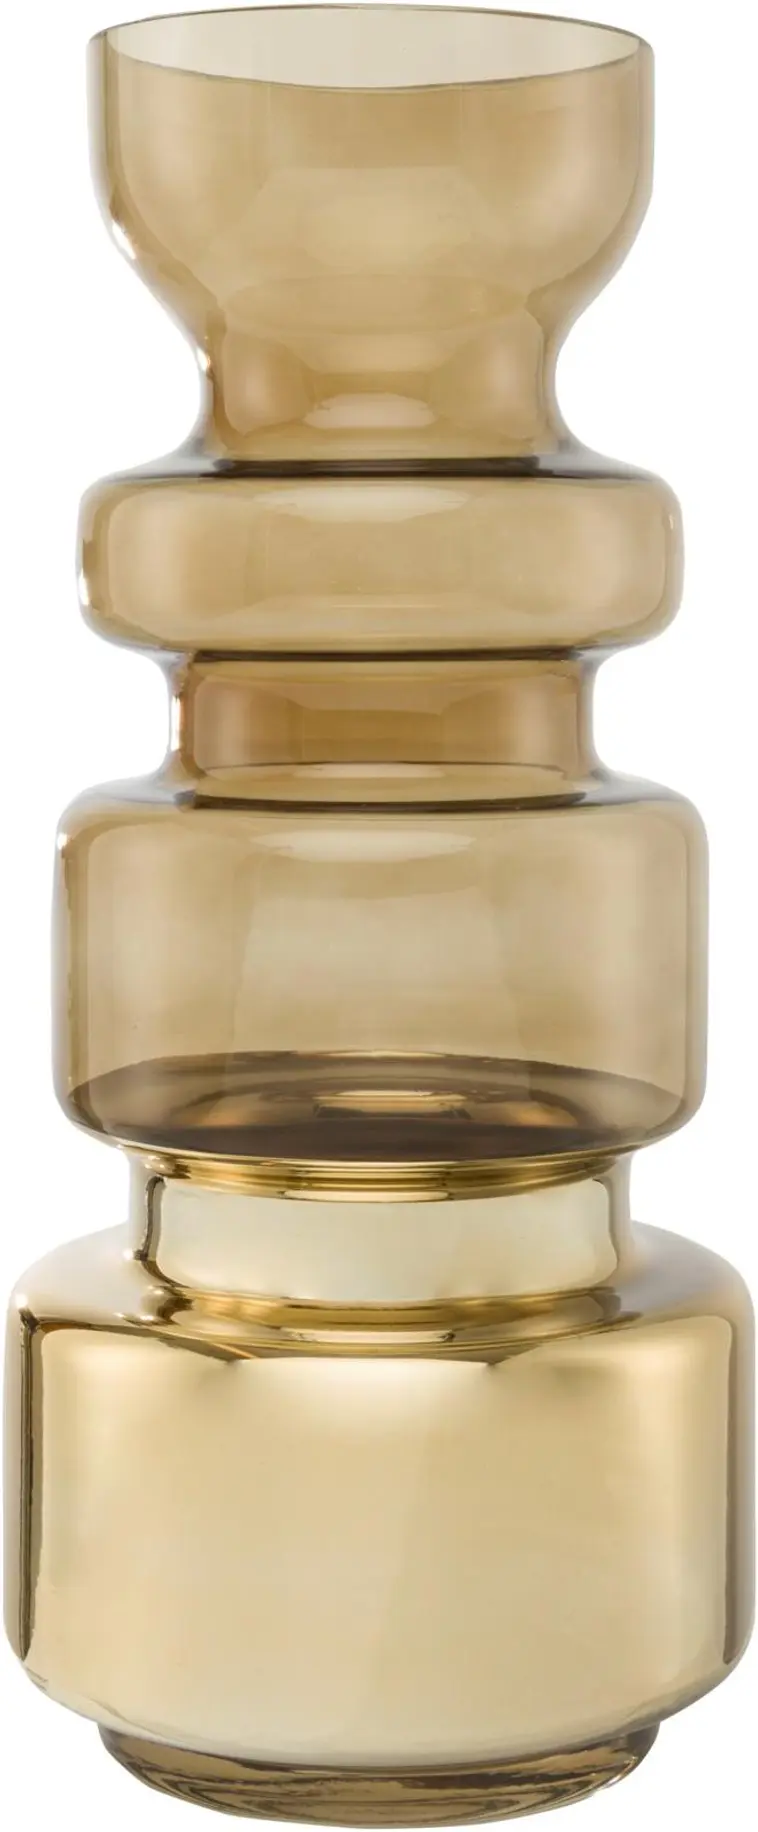 House maljakko tehosteella kulta 36,5 cm | Prisma verkkokauppa